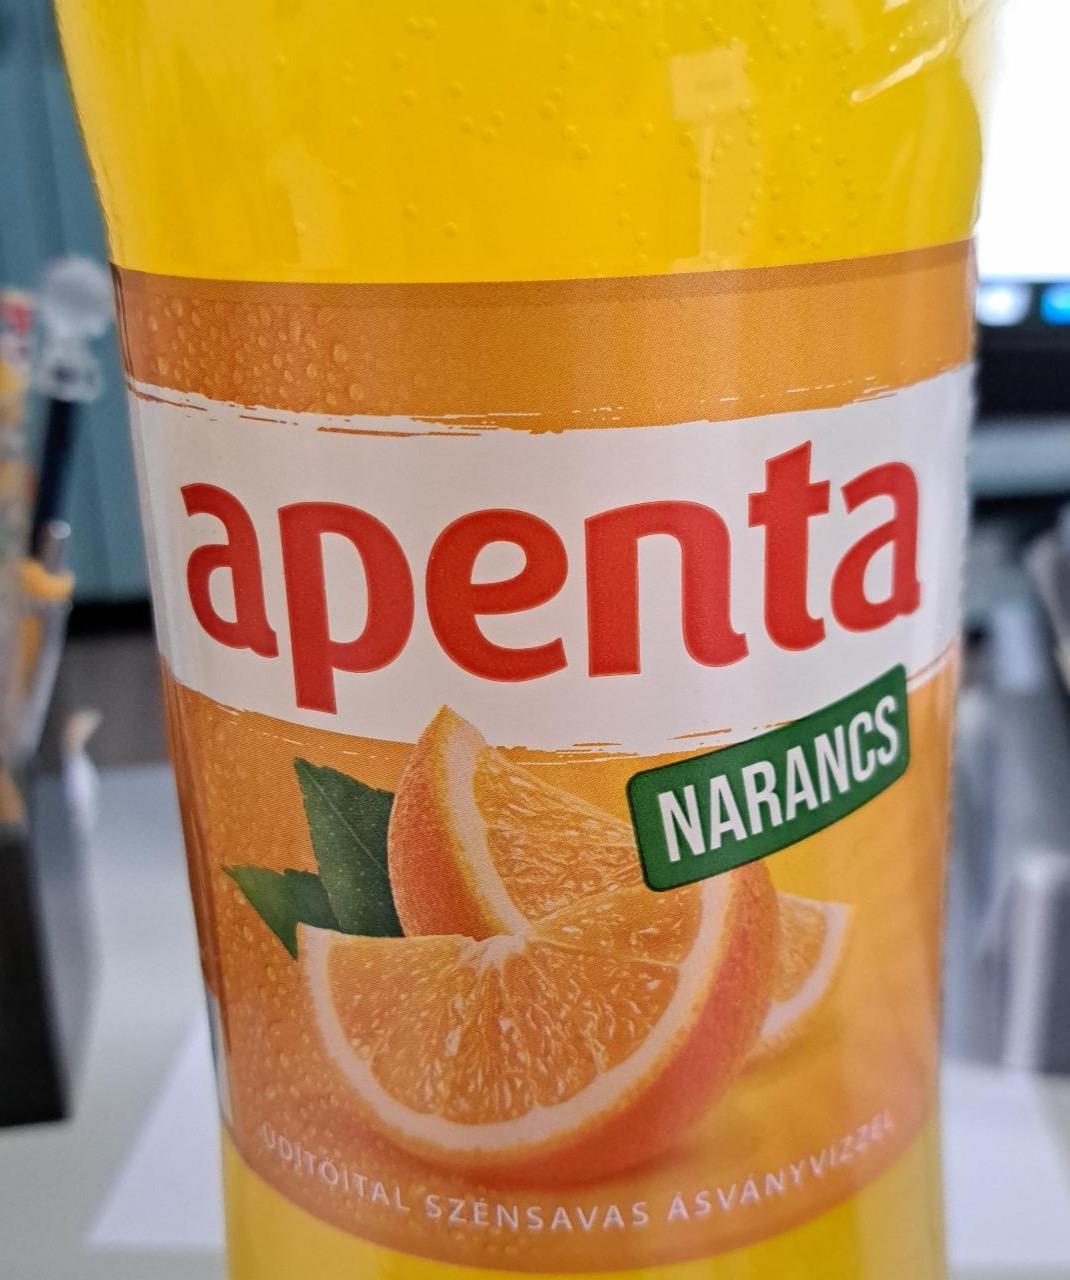 Képek - Apenta narancs üdítőital